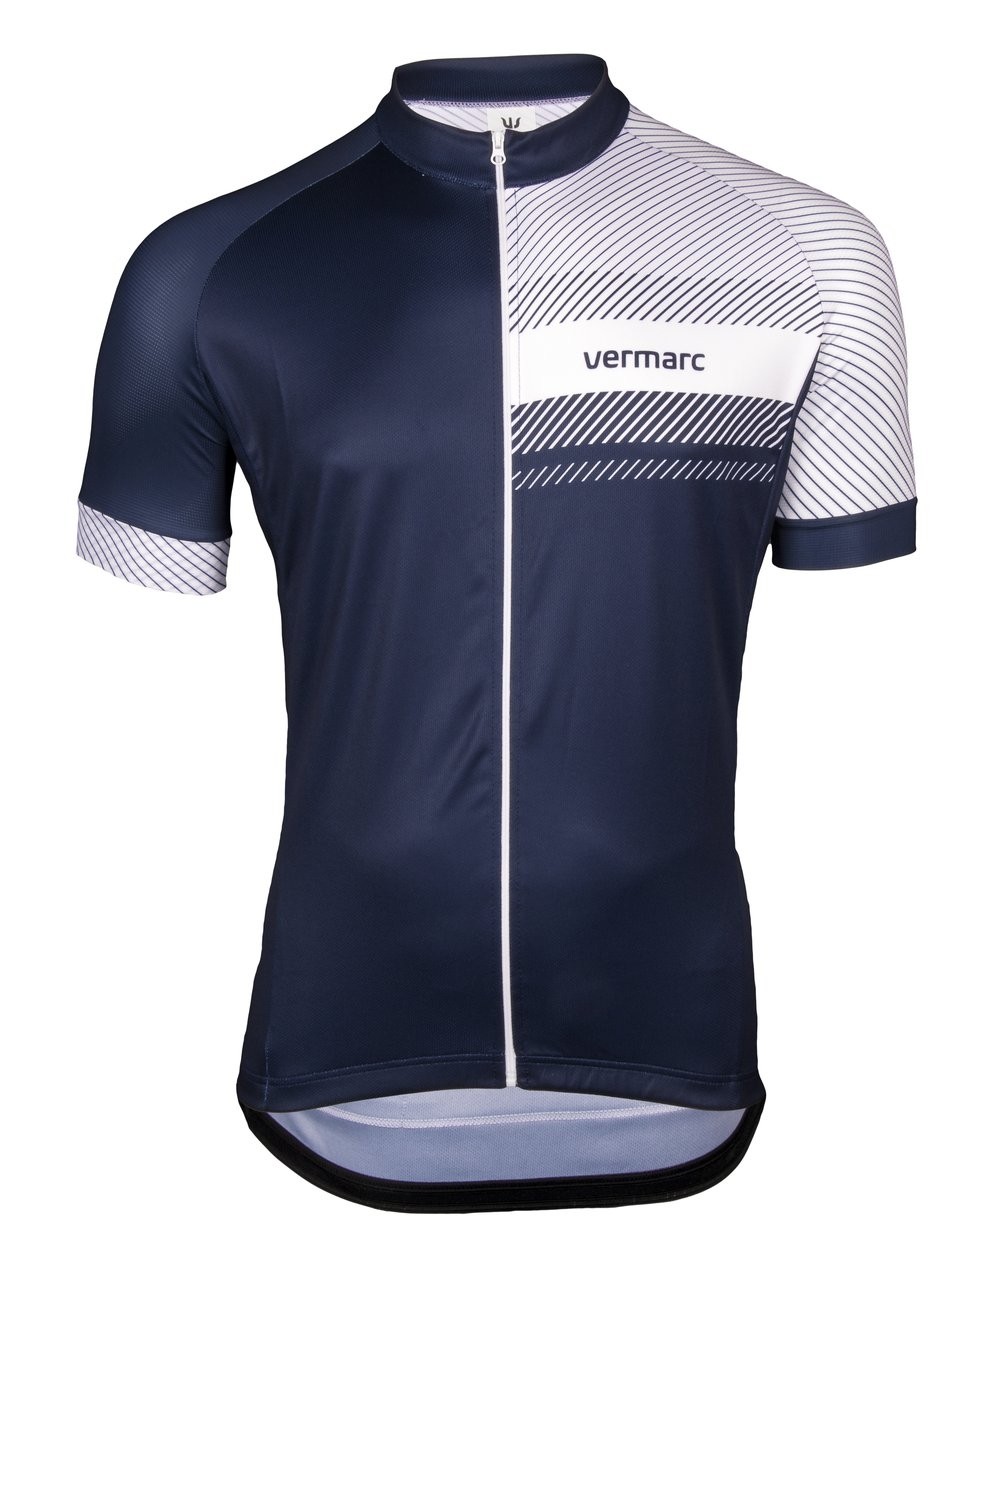 Vermarc classico sp.l maillot de cyclisme manches courtes bleu